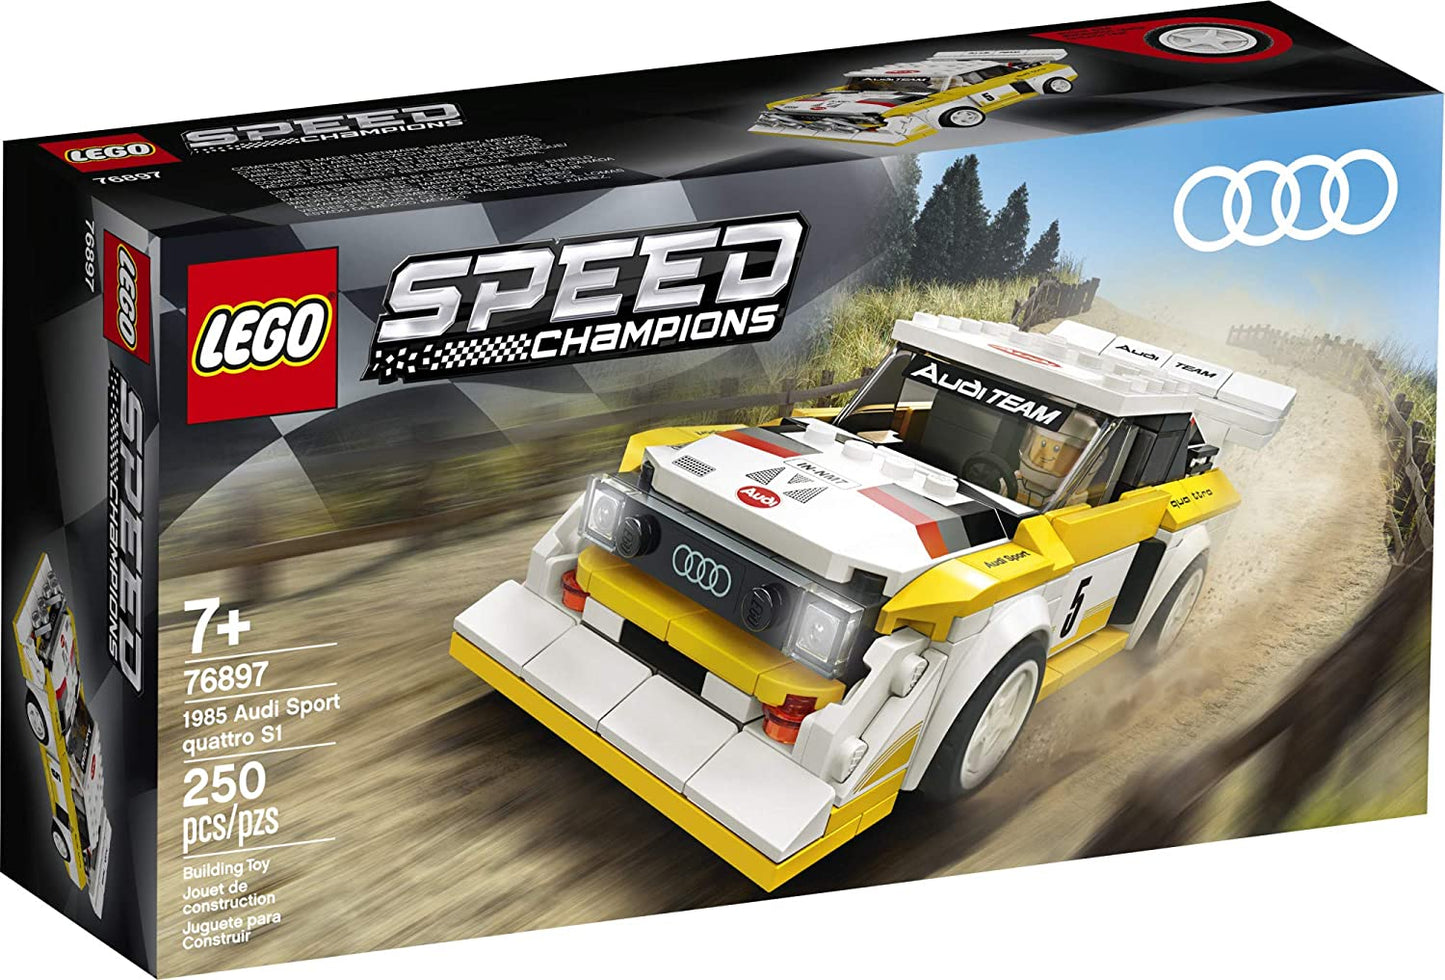 LEGO Speed Champions - 1985 Audi Sport Quattro S1 76897